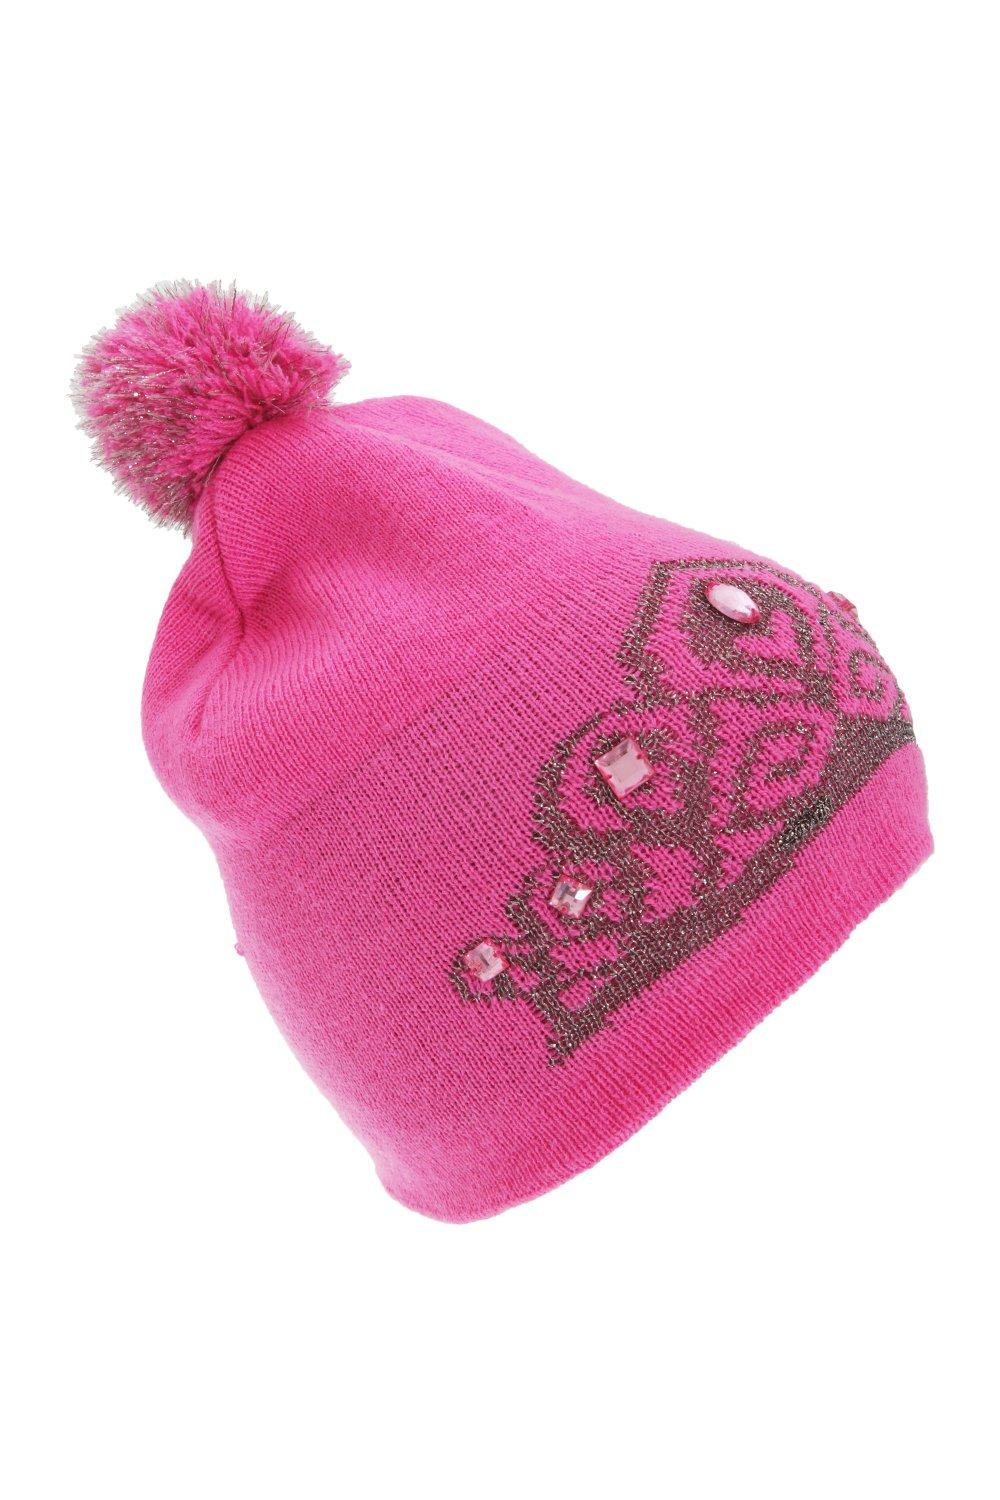 Зимняя шапка-бини с узором тиары Floso, розовый новинка 2018 модная зимняя шапка furandown женская шапка бини со стразами шапки с помпоном из натурального меха енота